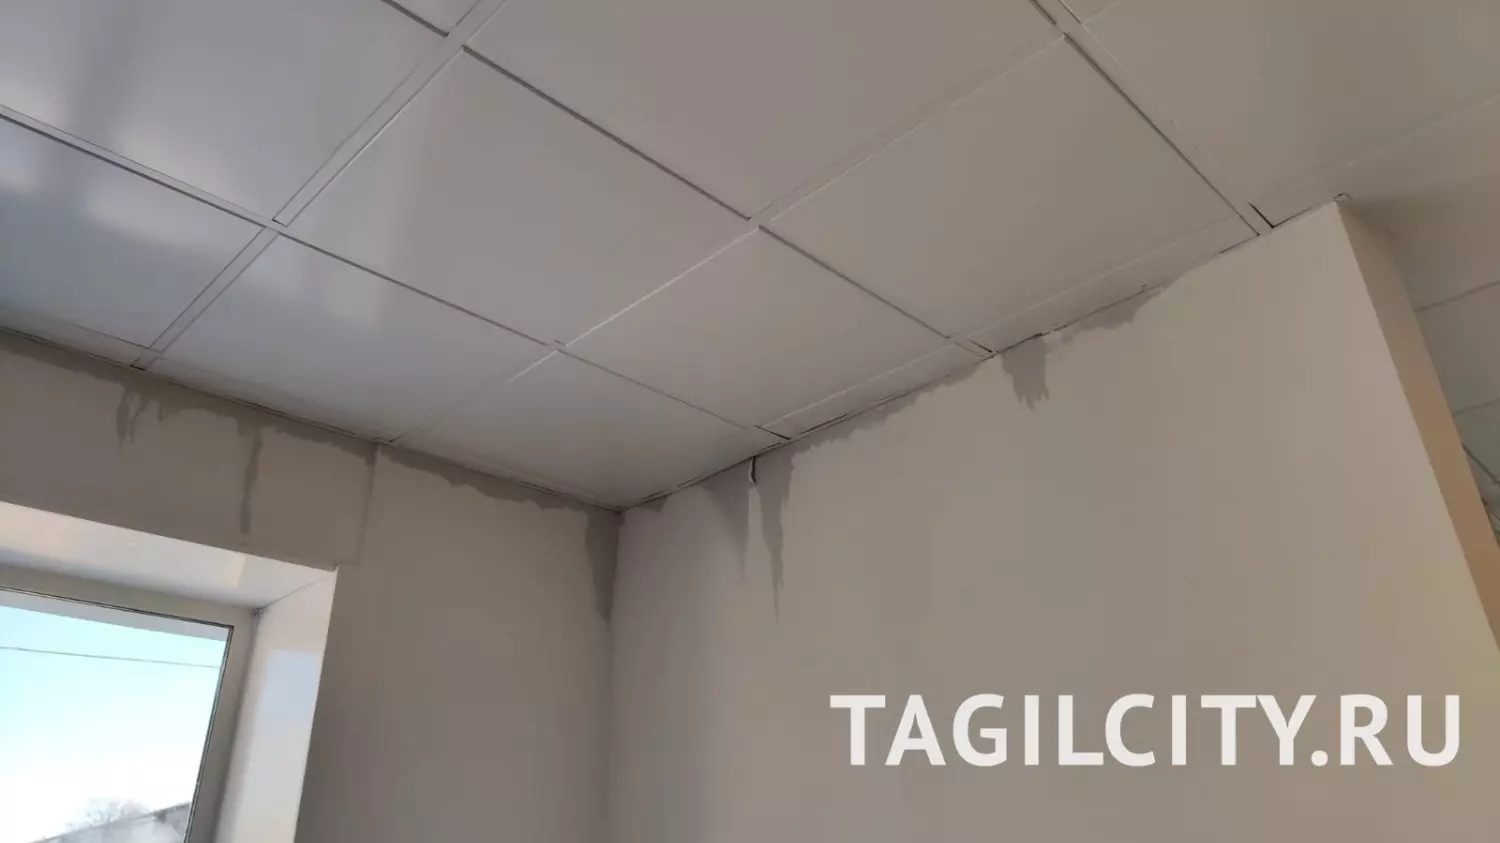 Последствия прорыва теплосетей возле поликлиники на Вагонке